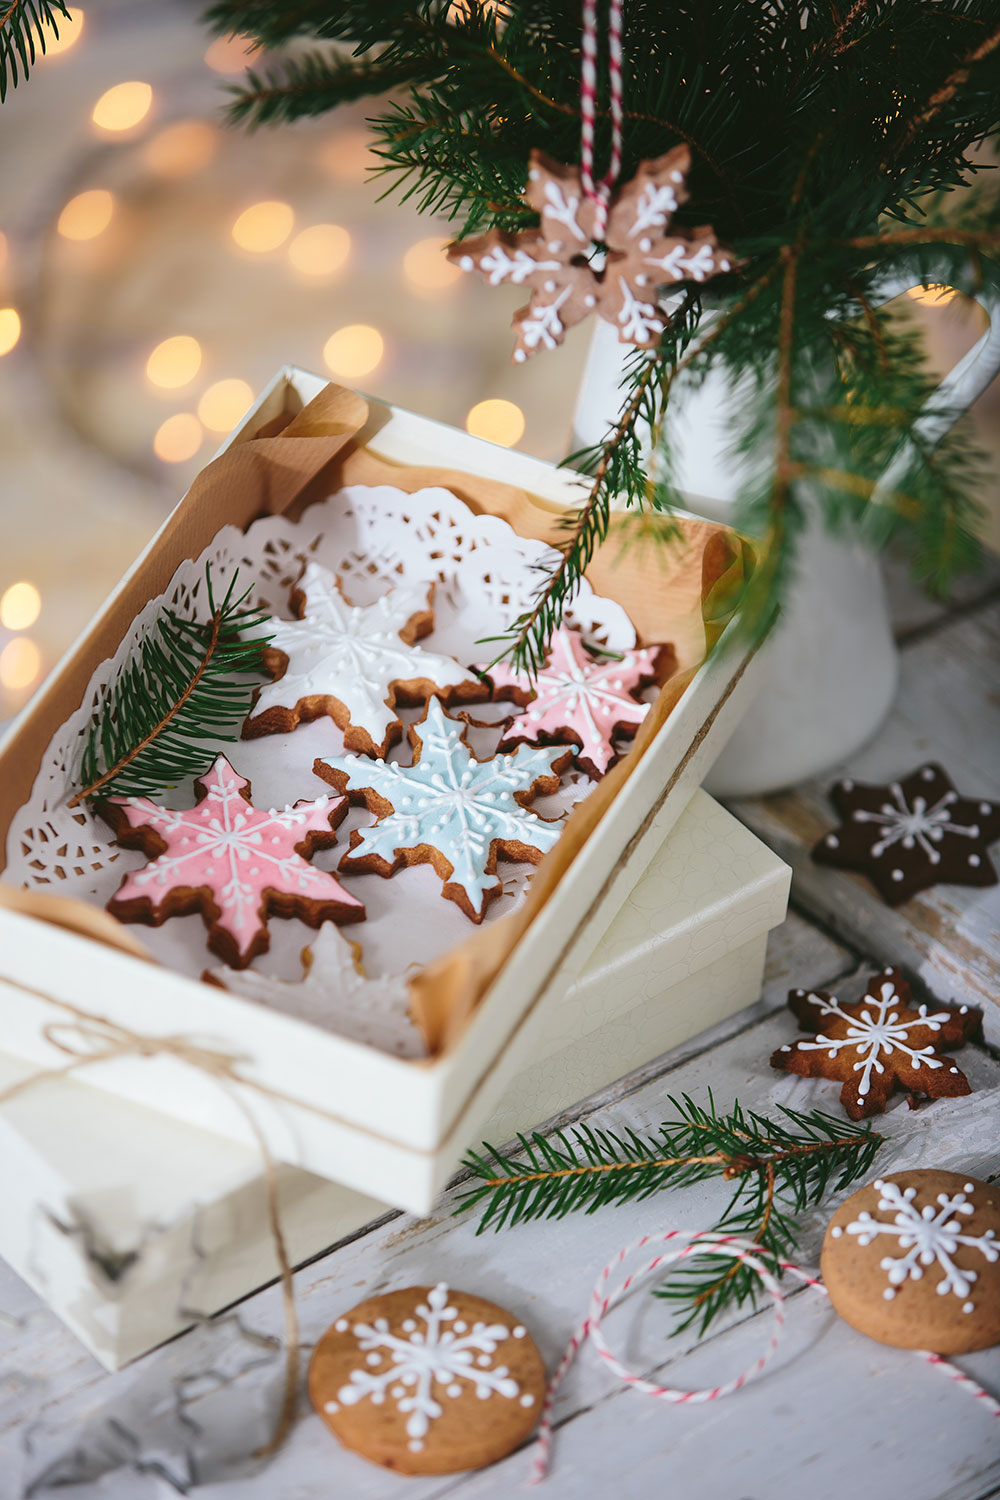 Decorì presenta la ricetta per biscotti natalizi decorati, perfetti per essere personalizzati